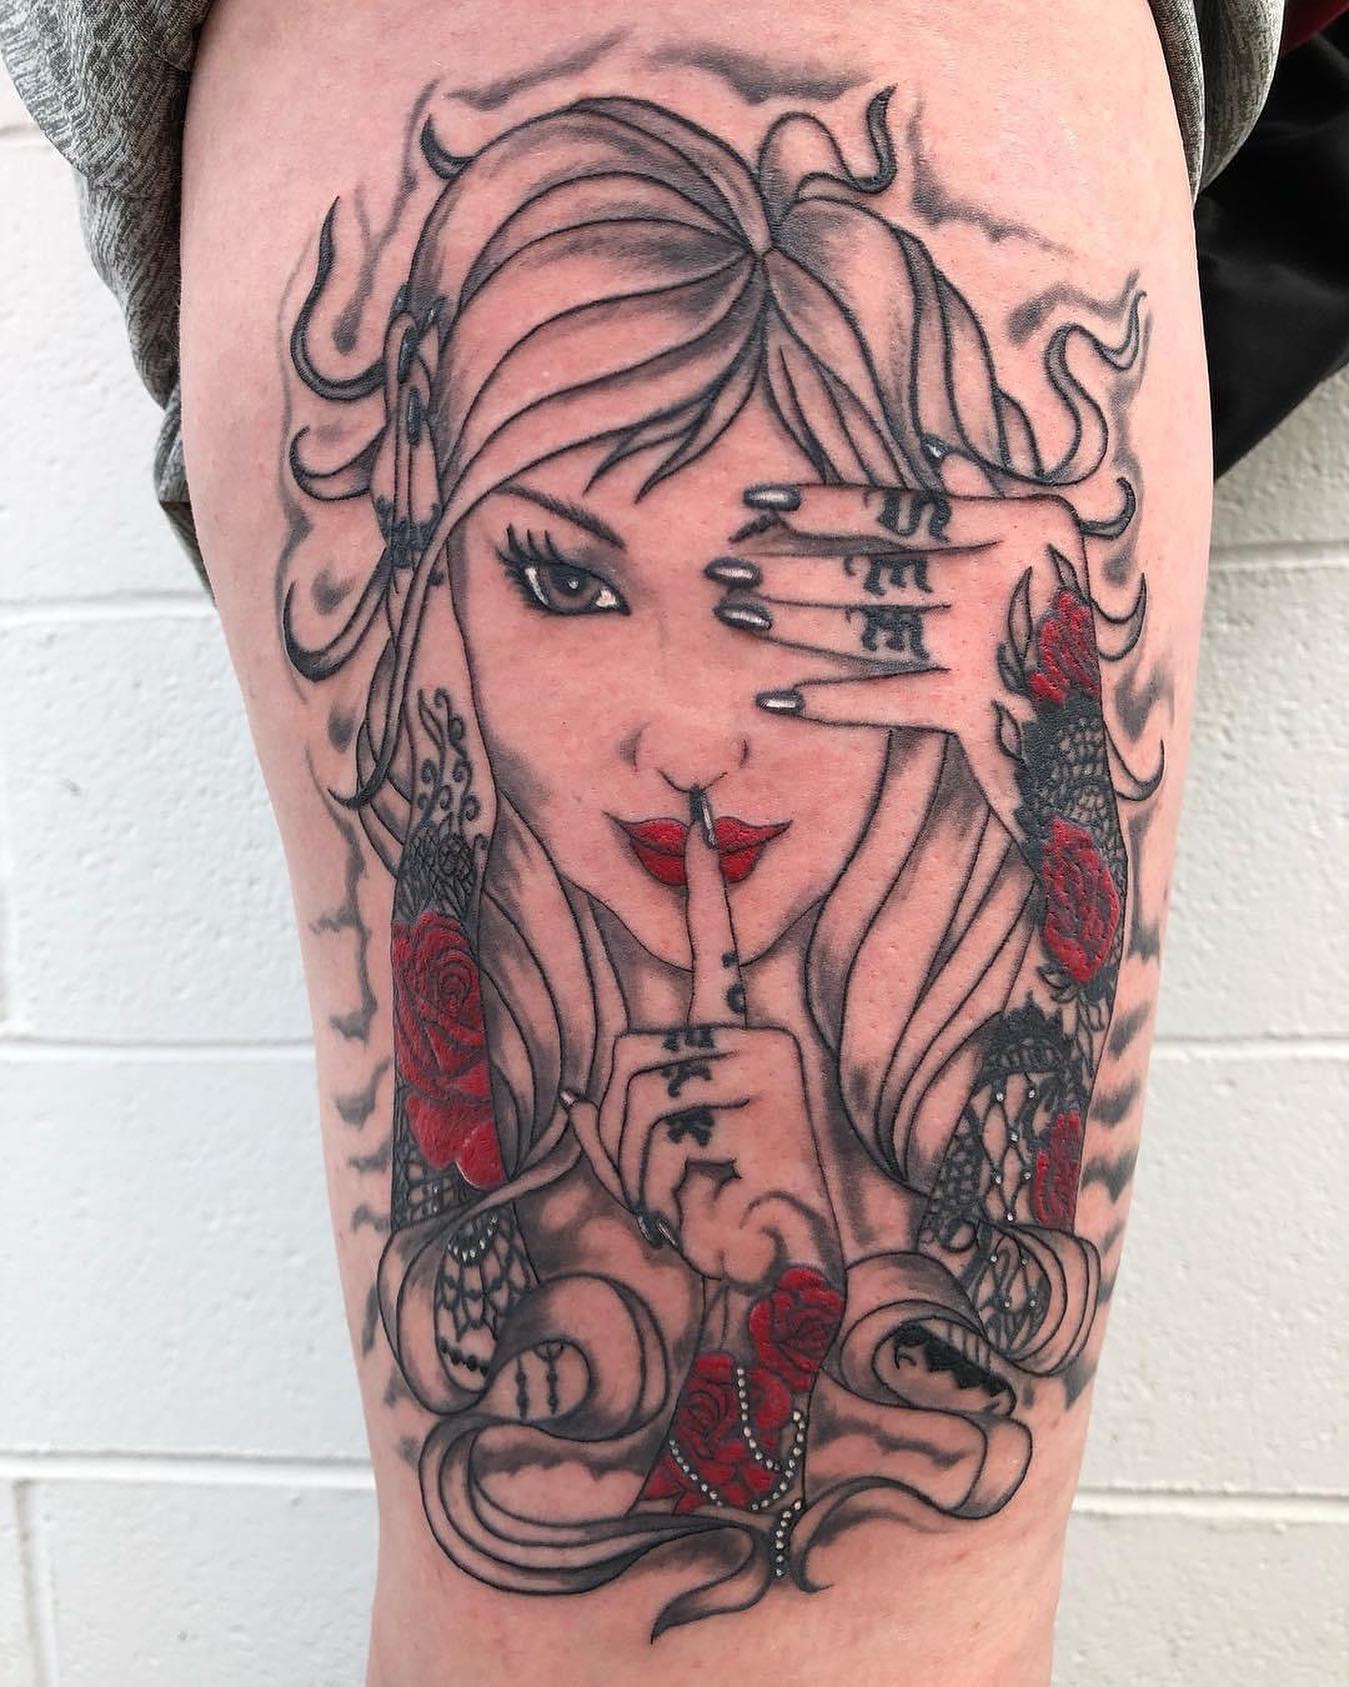 Tatuaje elegante en el muslo de una chica.